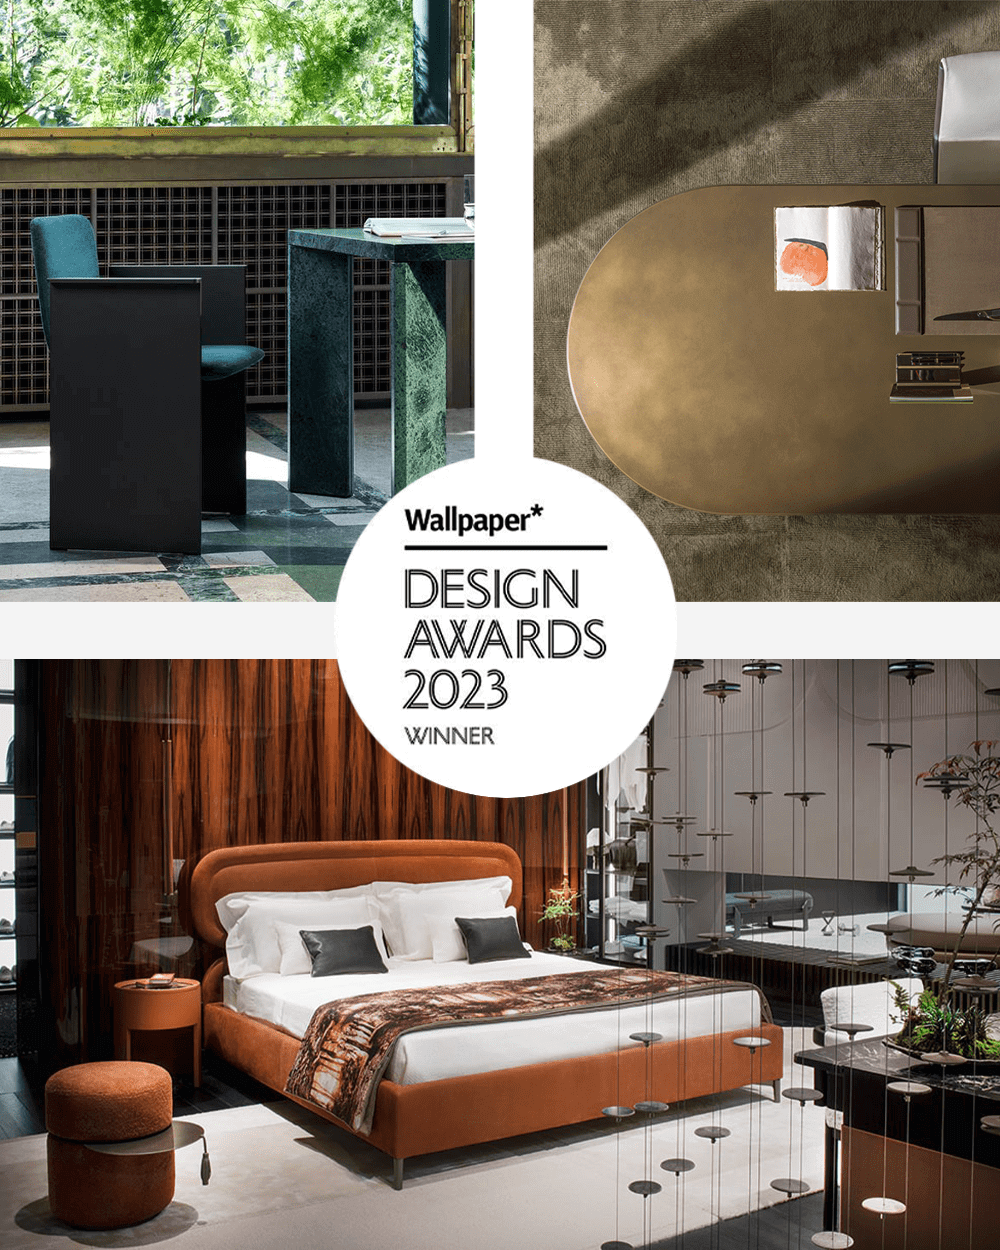 wallpaper design Awards cassina Flutz chair giorgetti vibe bed molteni&c blevio table